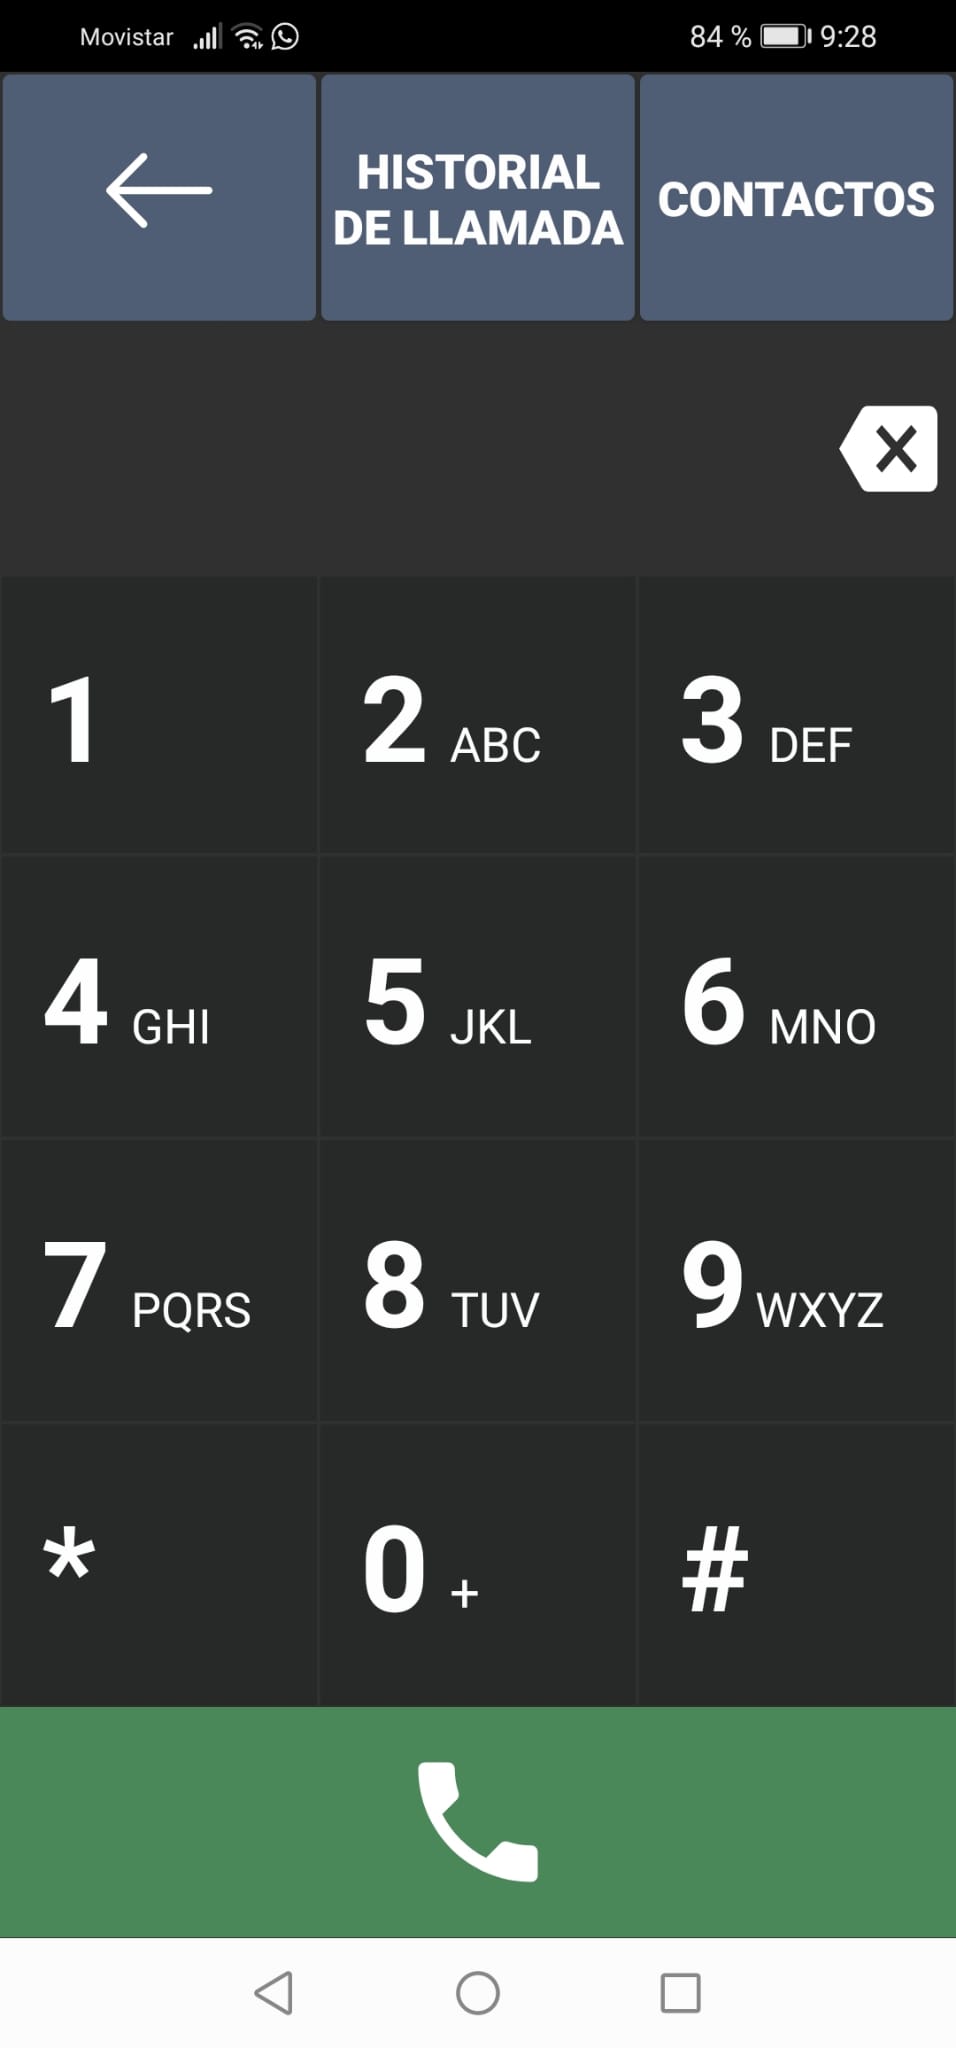 Imágen que muestra el teclado numérico para realizar llamadas.